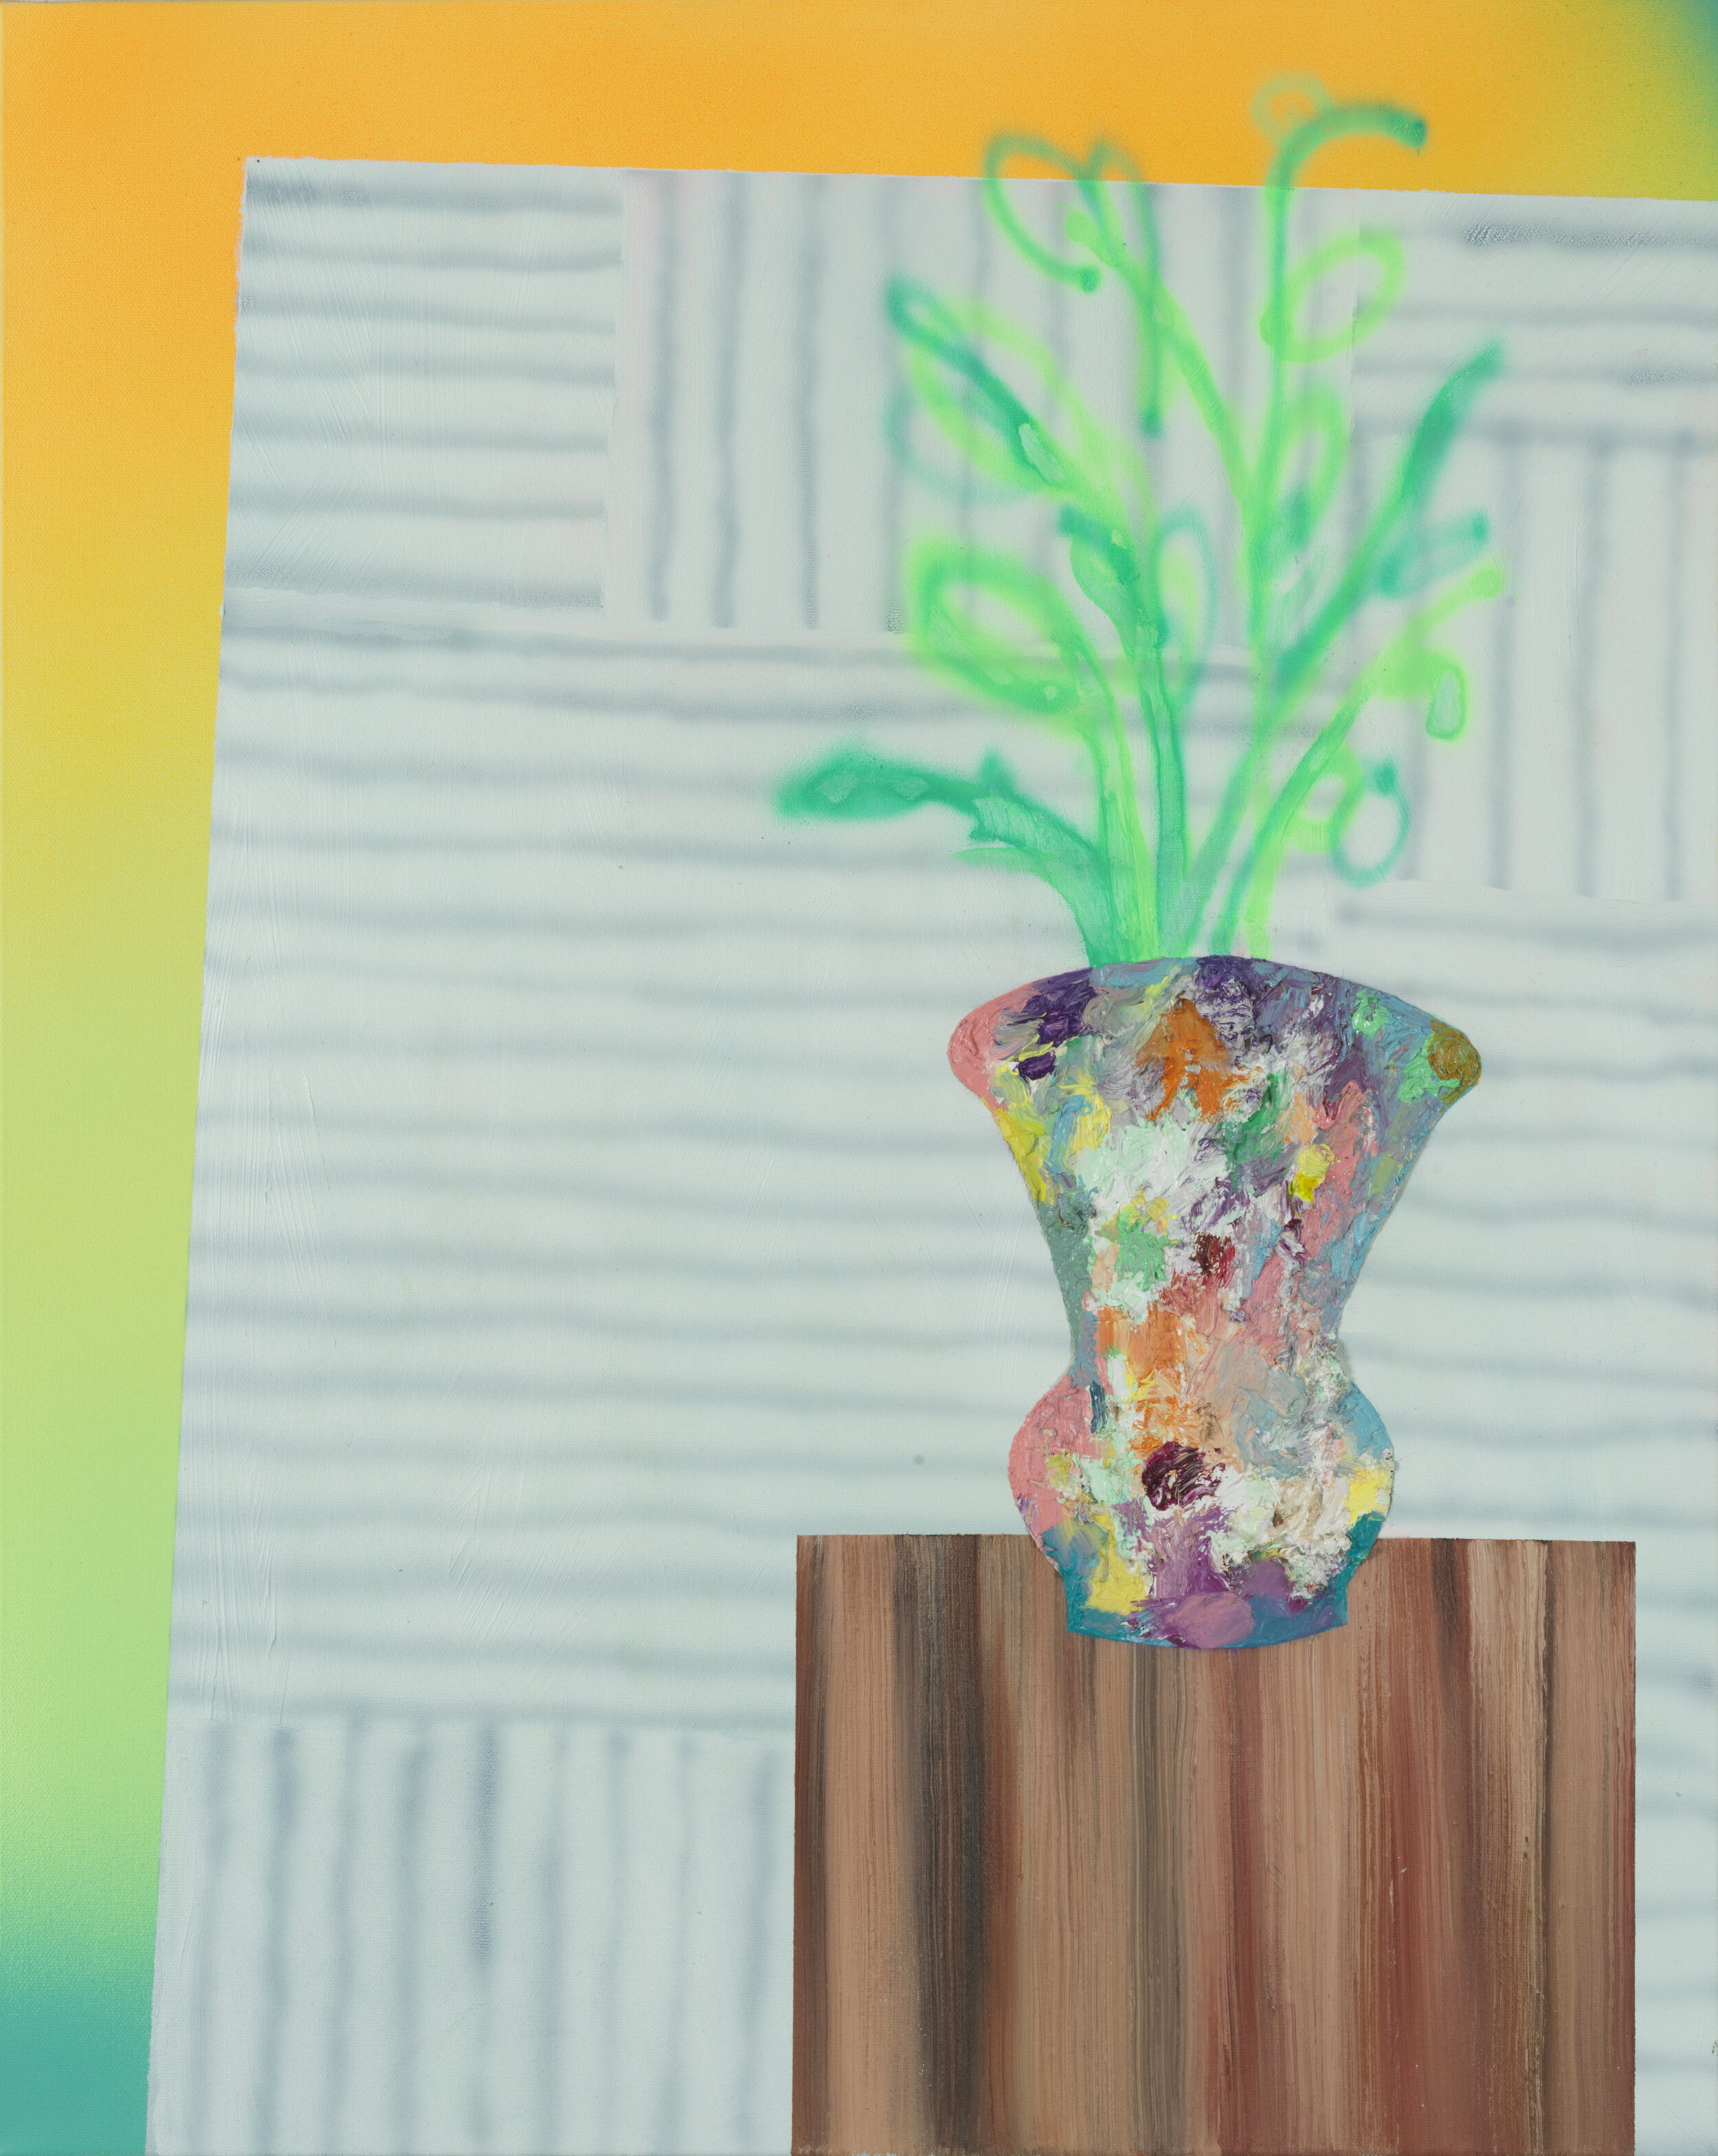 Vase, oil on canvas, 30" x 24", 2020